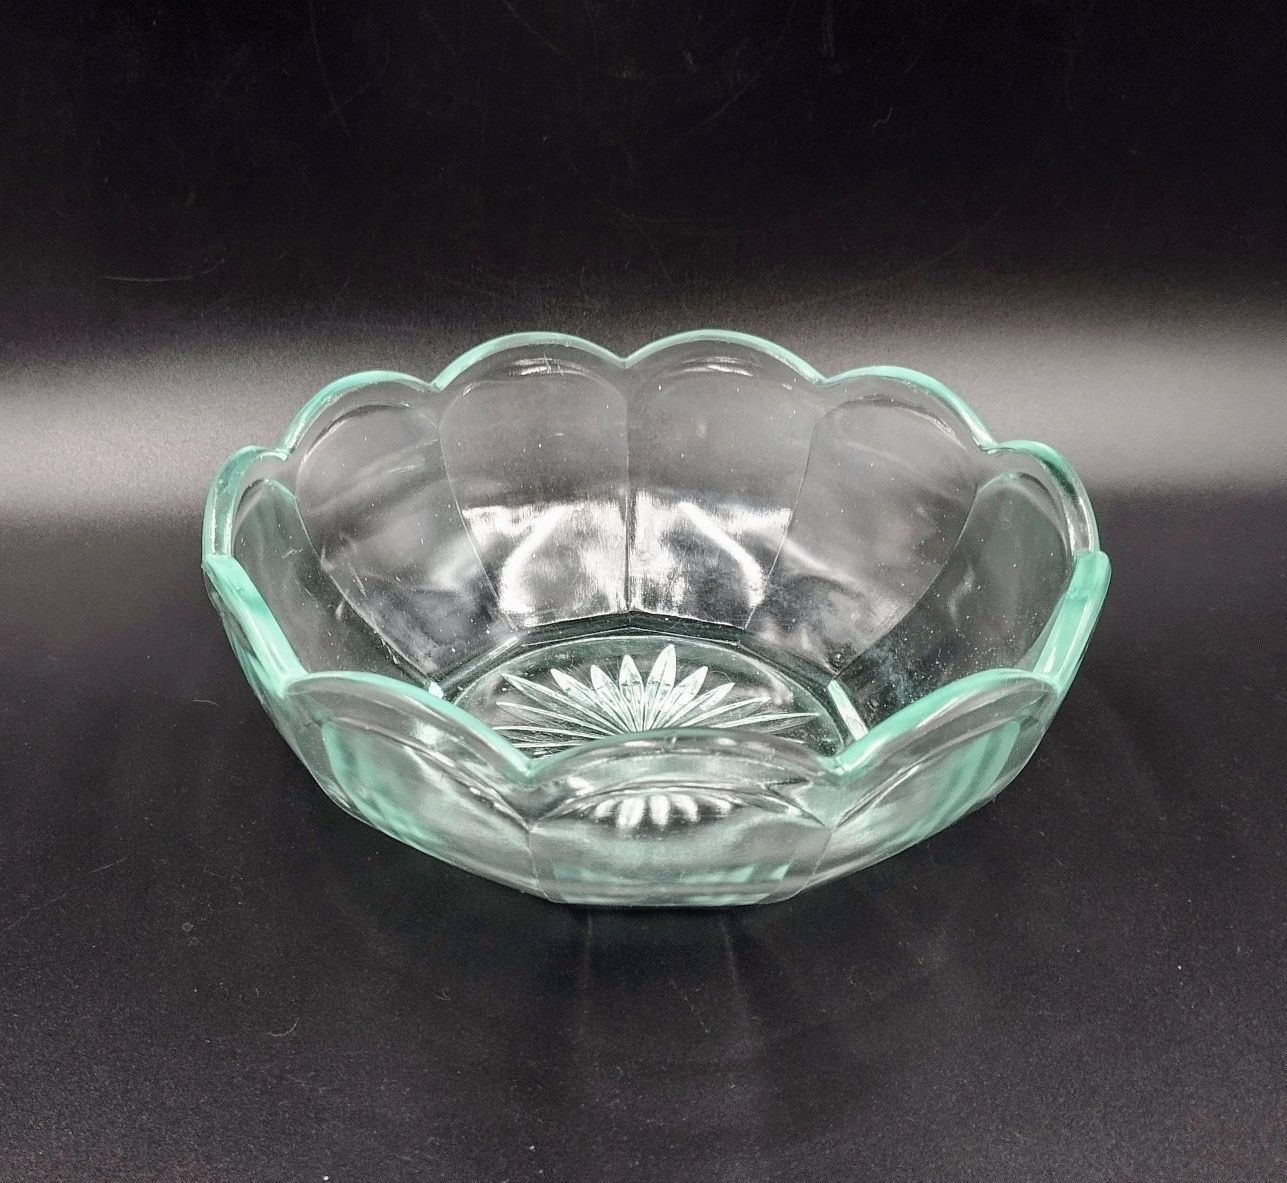 Misa szkło antyk retro vintage design prasowane szklana miska lodowa